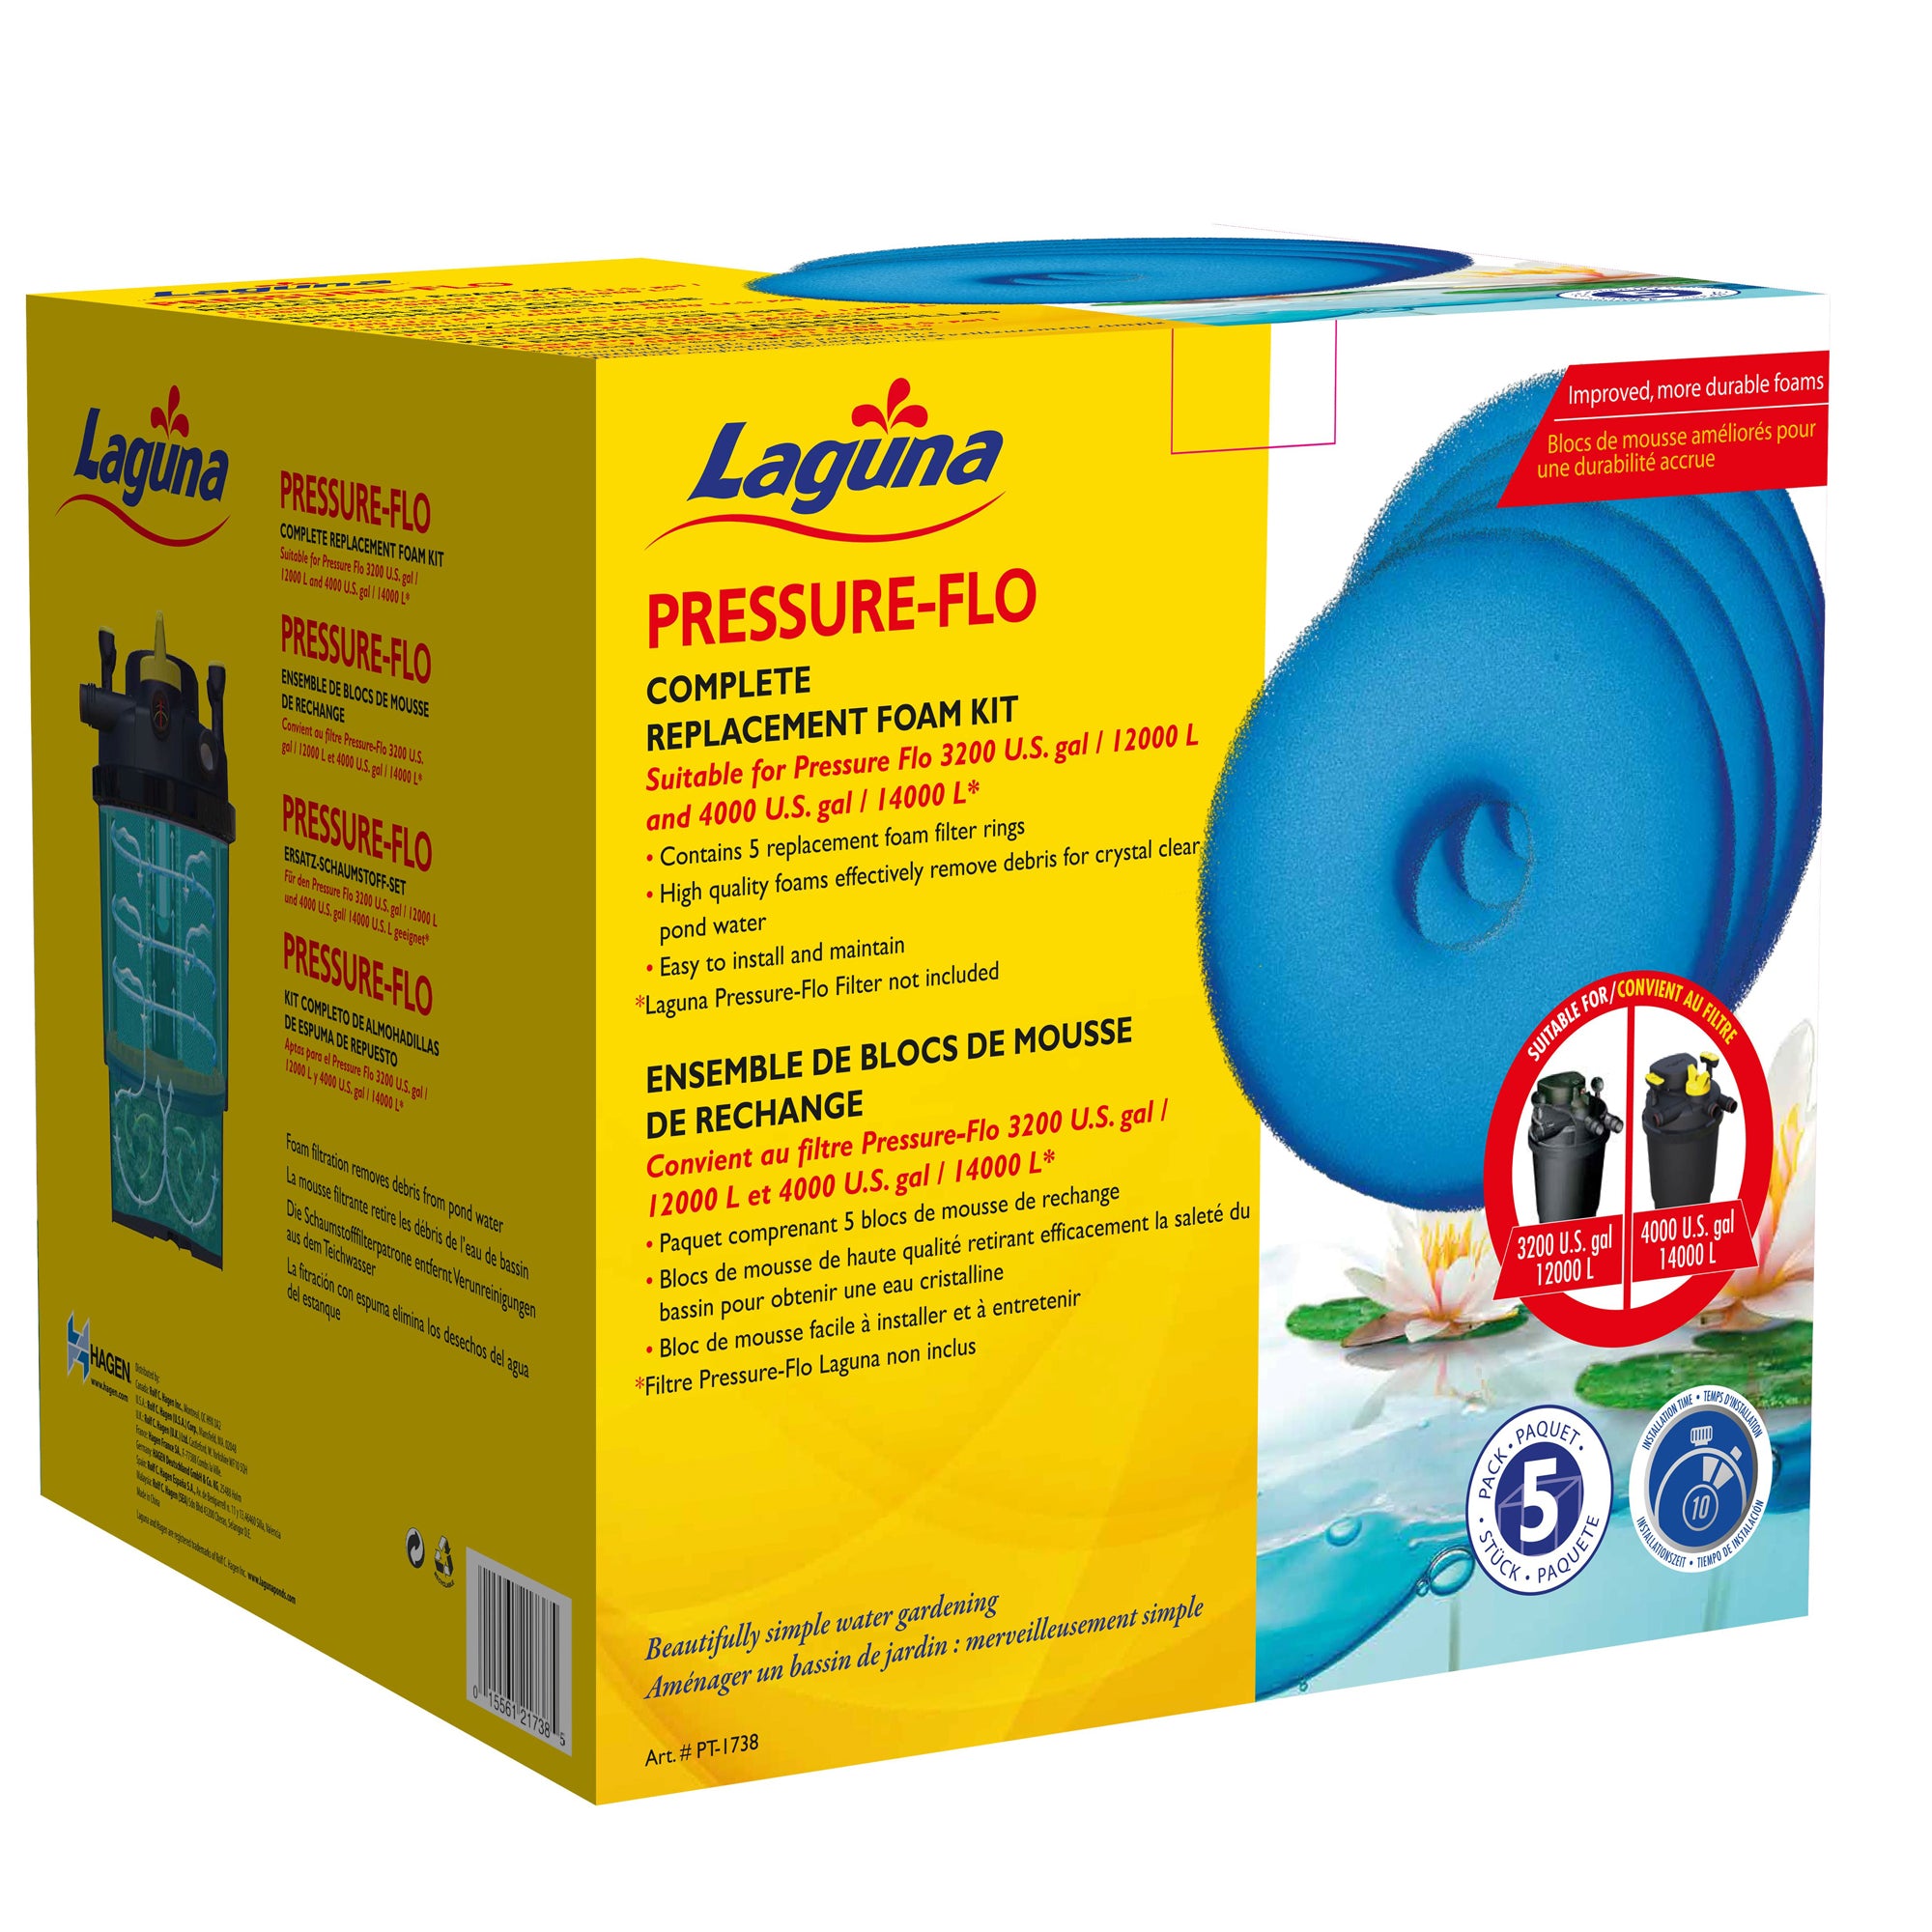 Blocs de mousse de rechange pour filtres pressurisés Pressure-Flo Laguna PT1718 et PT1728, 27 cm, paquet de 5